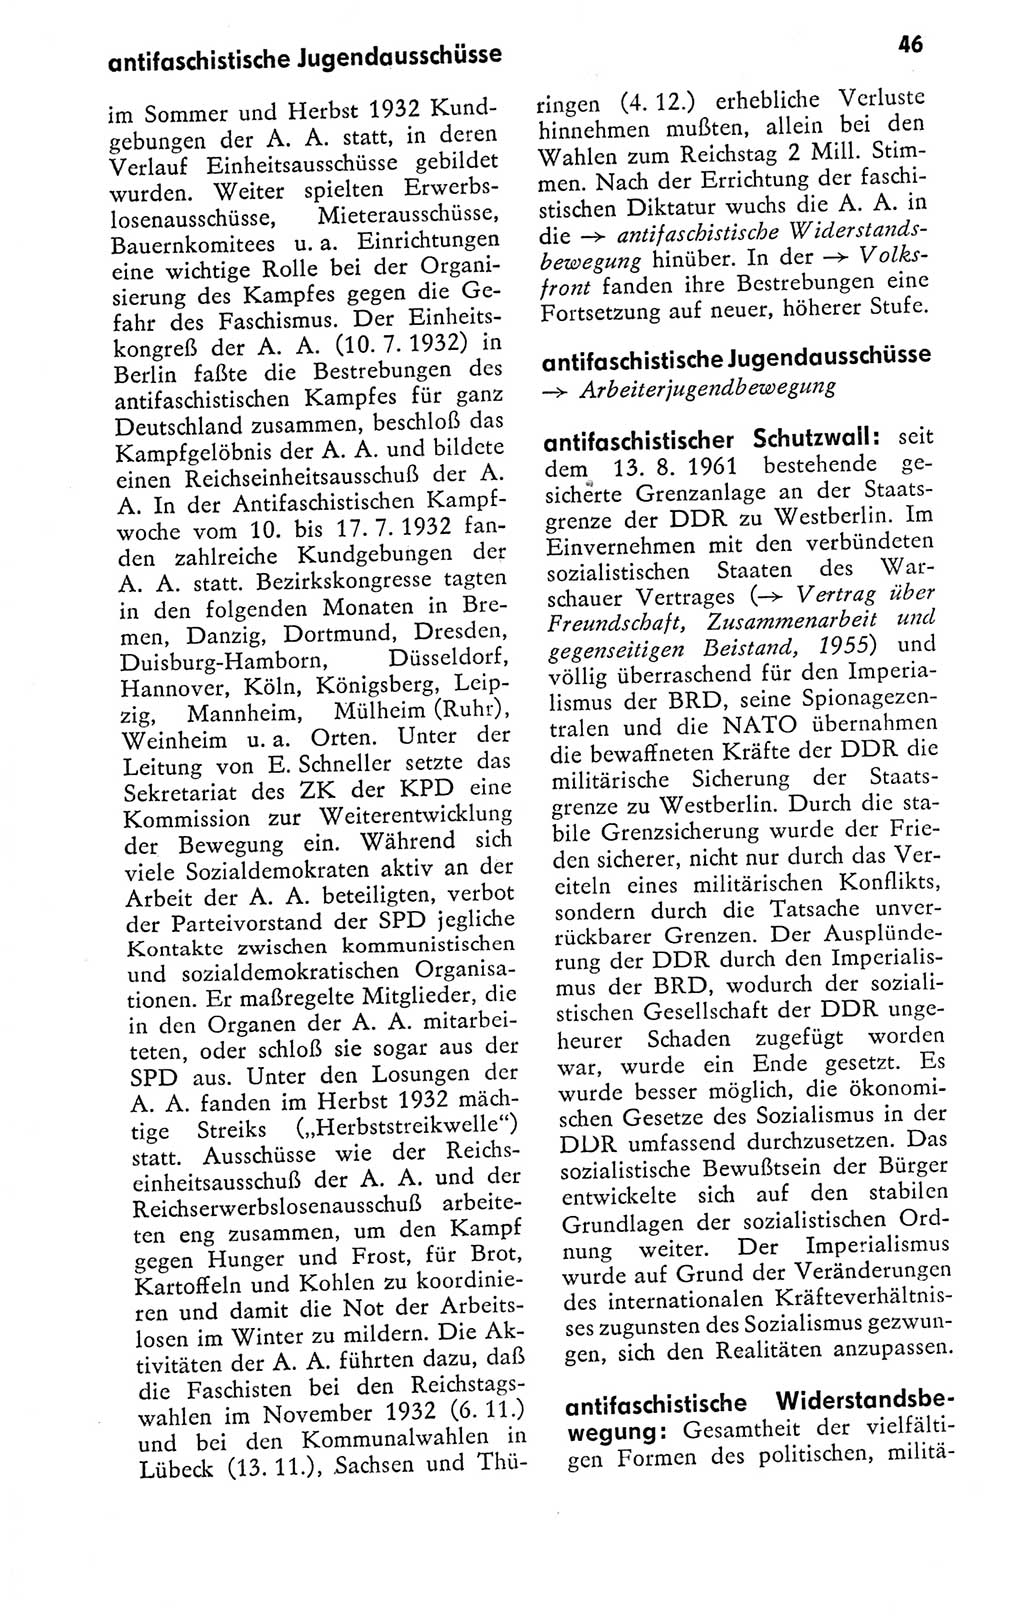 Kleines politisches Wörterbuch [Deutsche Demokratische Republik (DDR)] 1978, Seite 46 (Kl. pol. Wb. DDR 1978, S. 46)